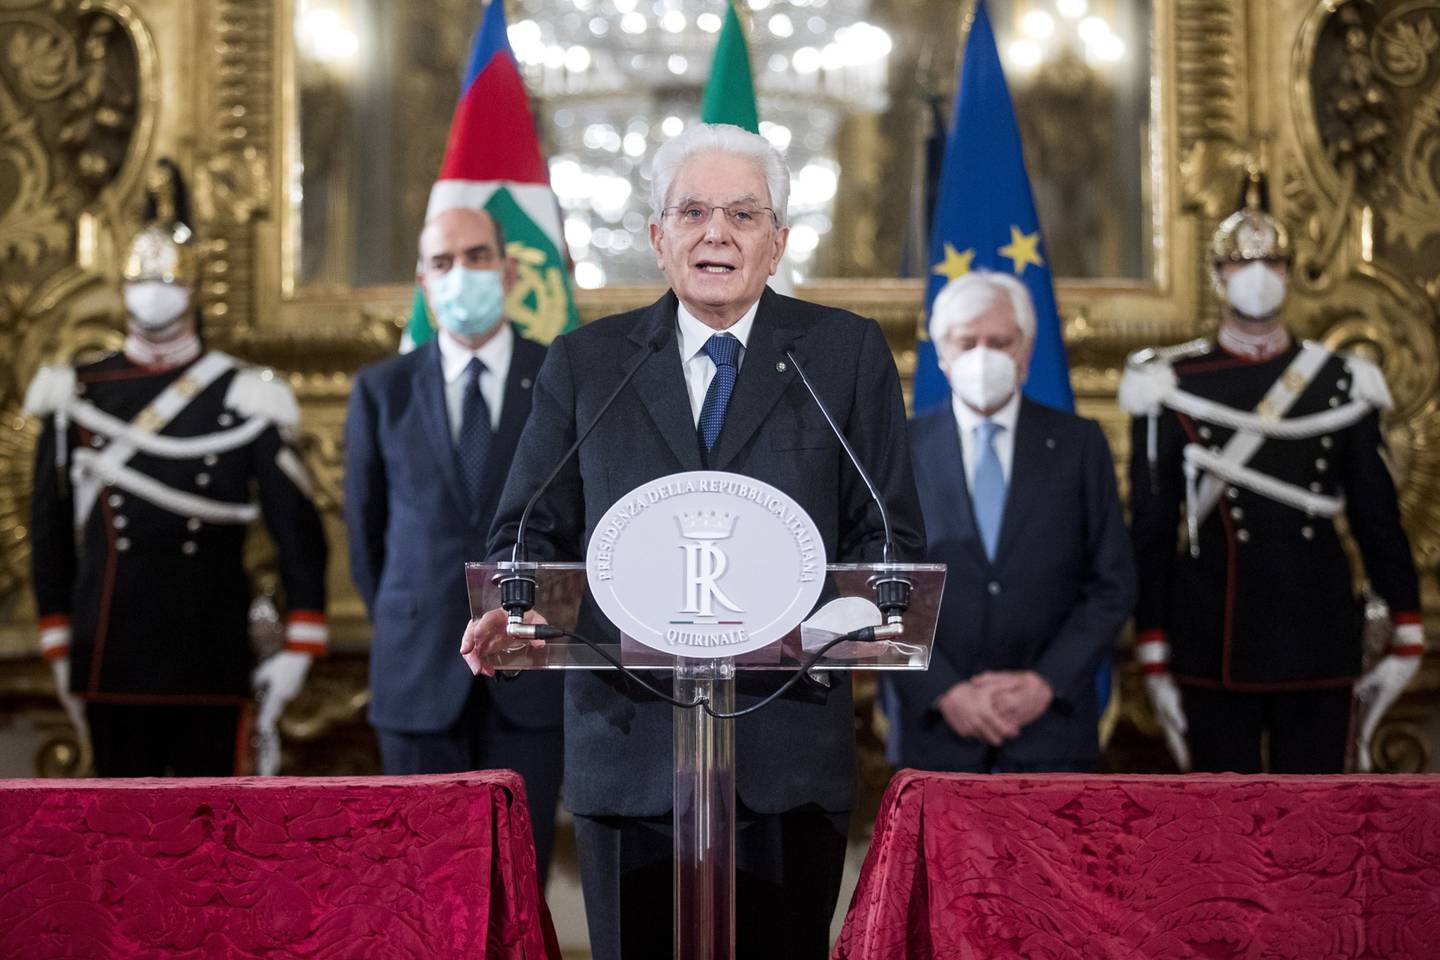 Italia reelige a Mattarella como presidente.